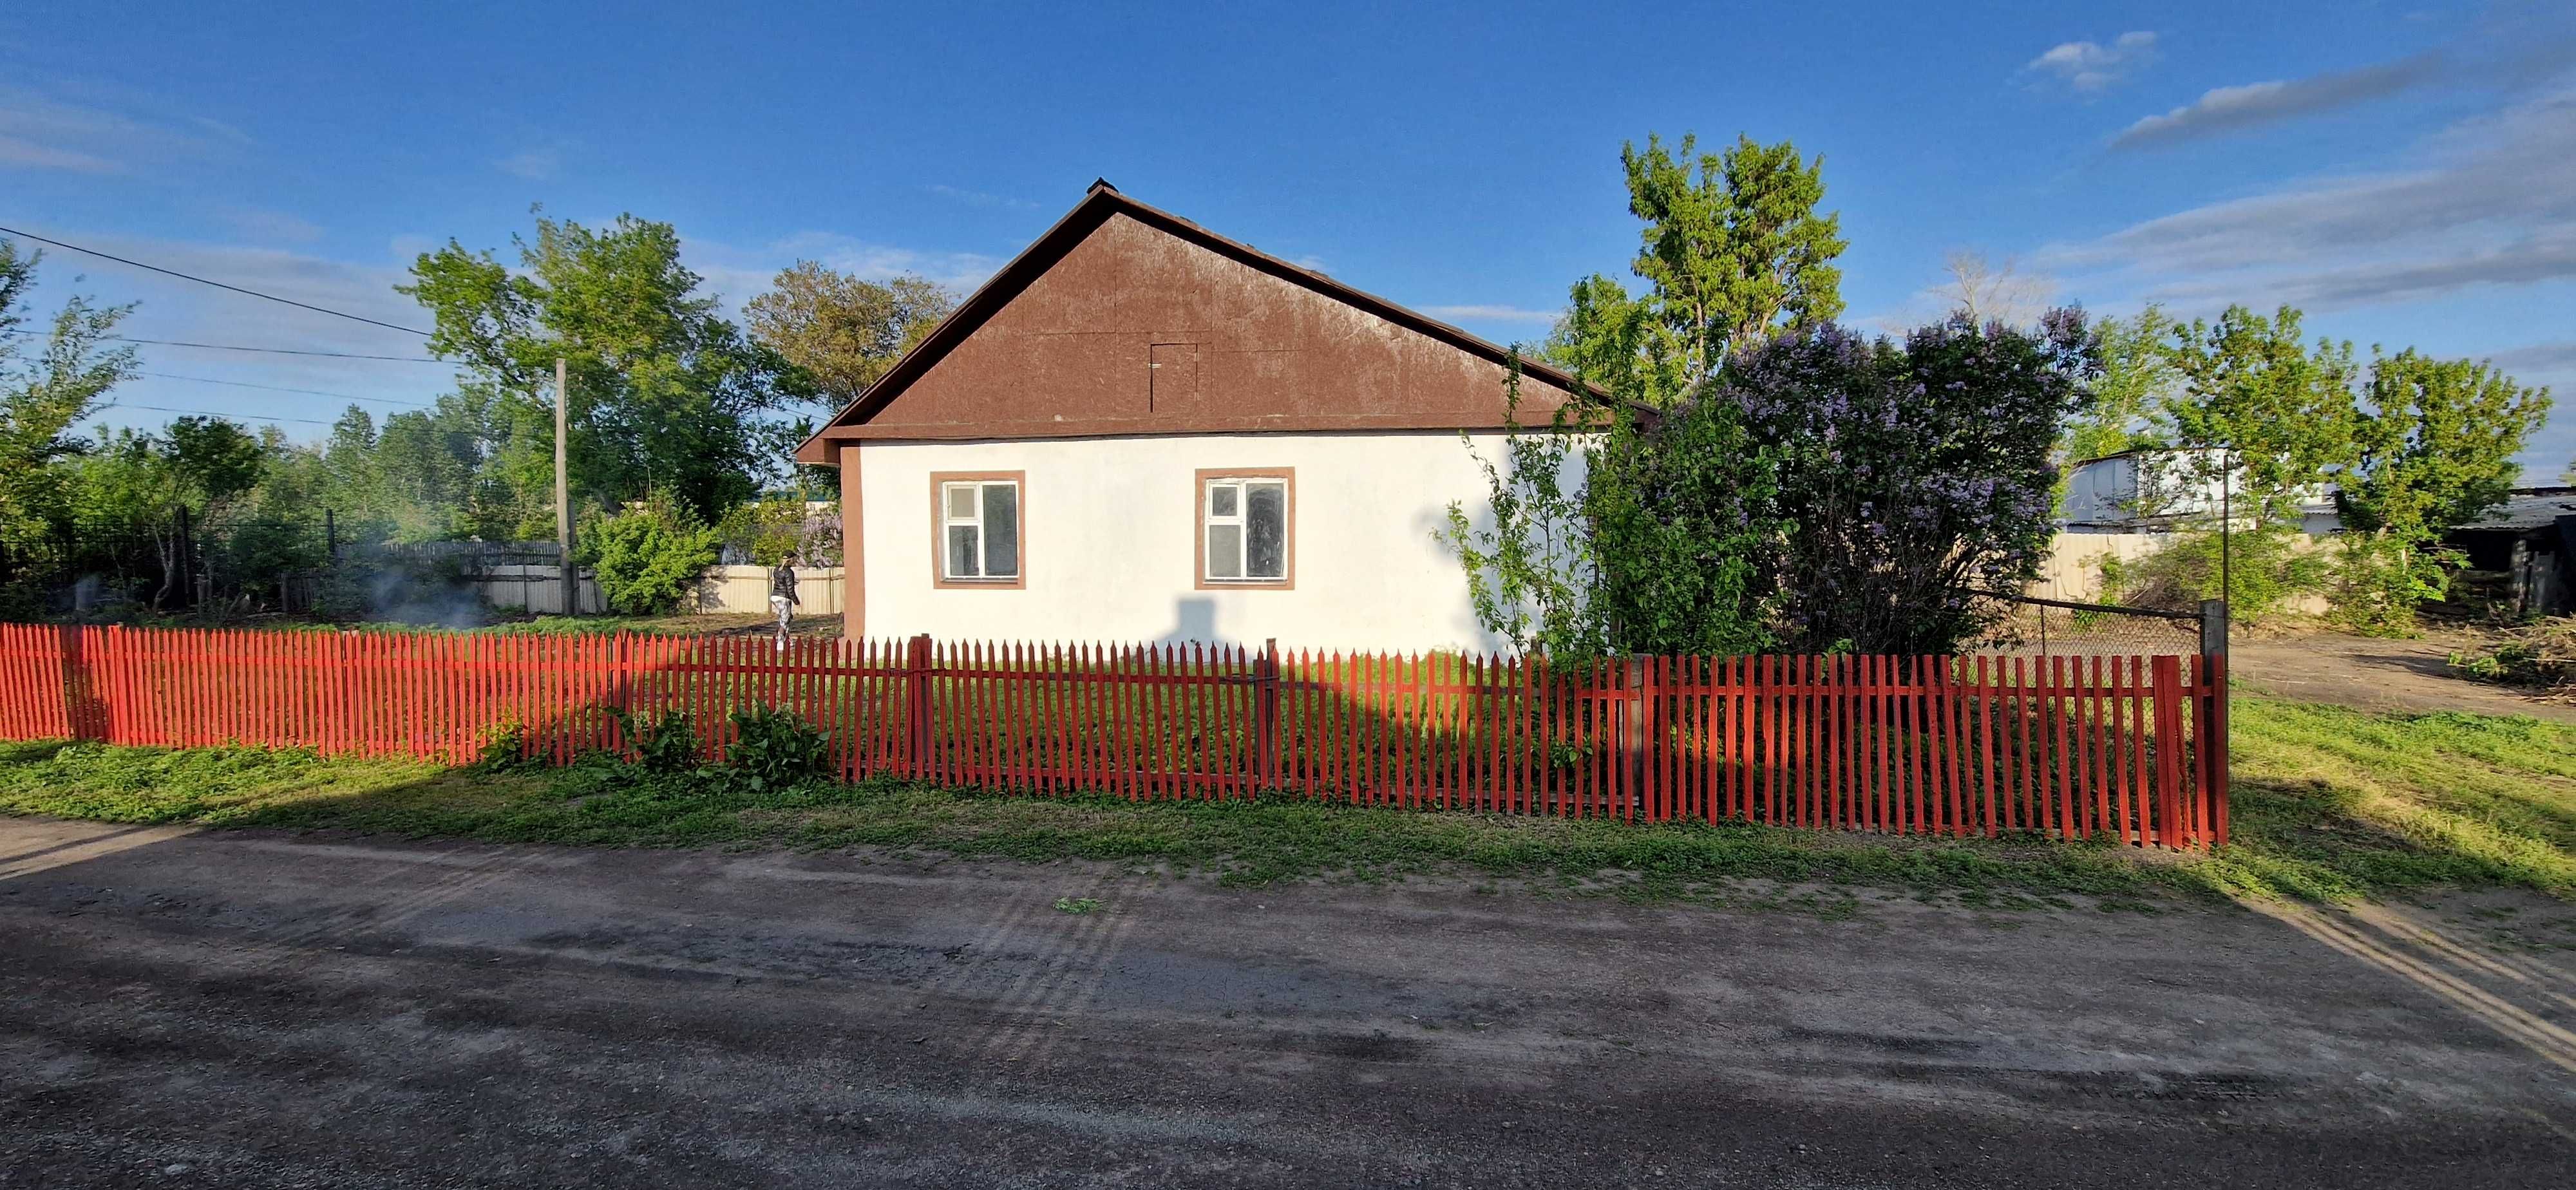 Продам дом в Новоишимке